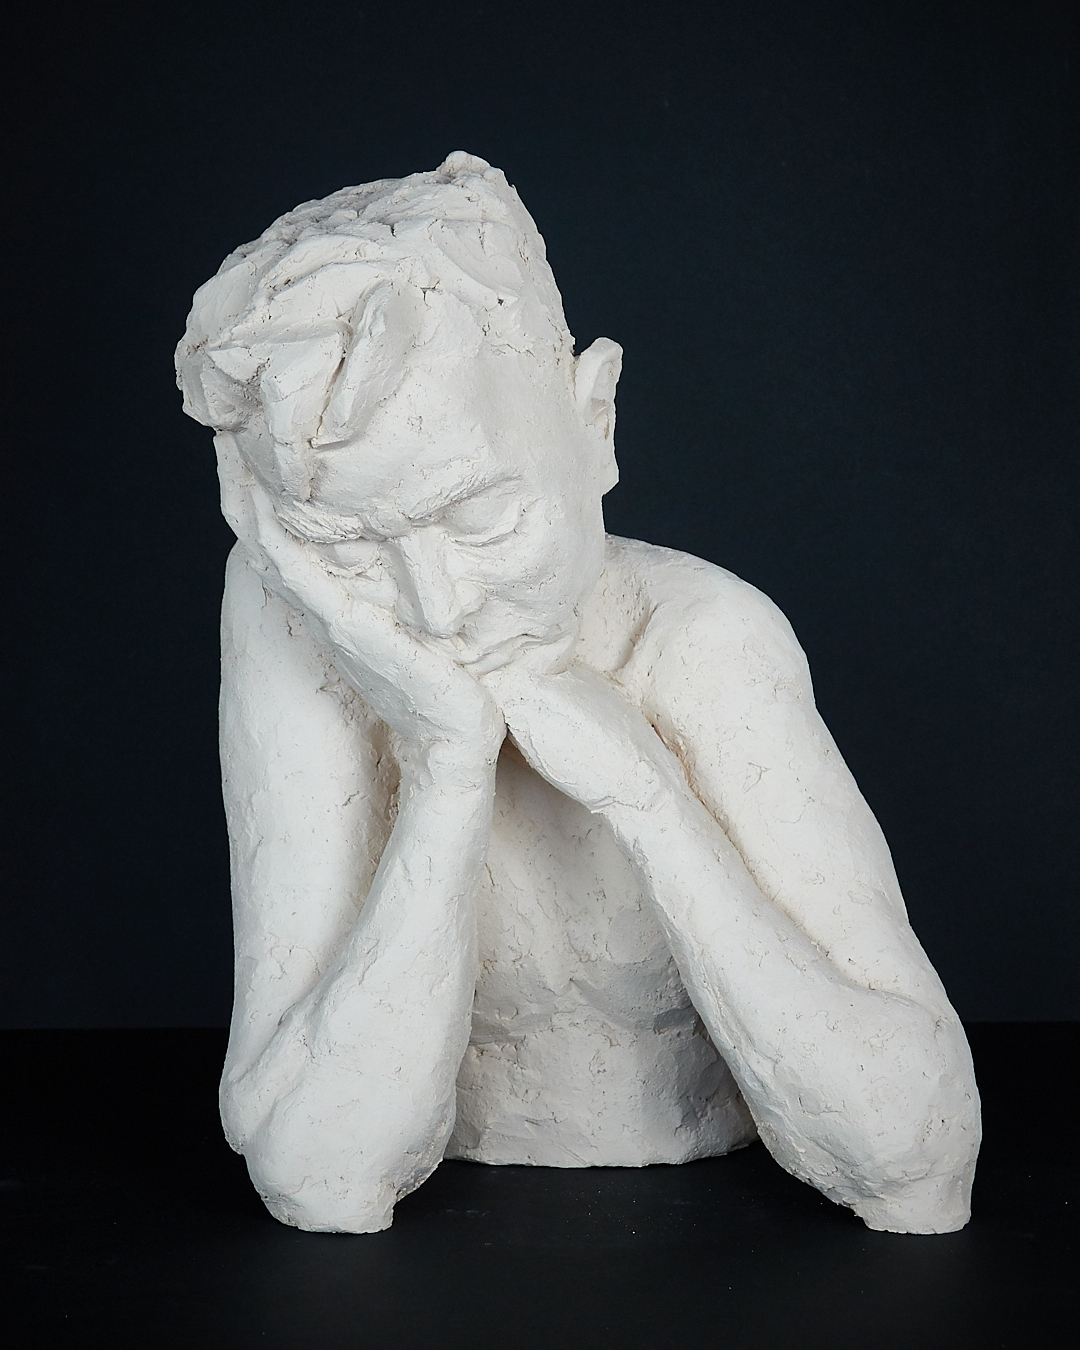 Sculpture "Student" by Uta Beckert, clay, 2018, height 41cm